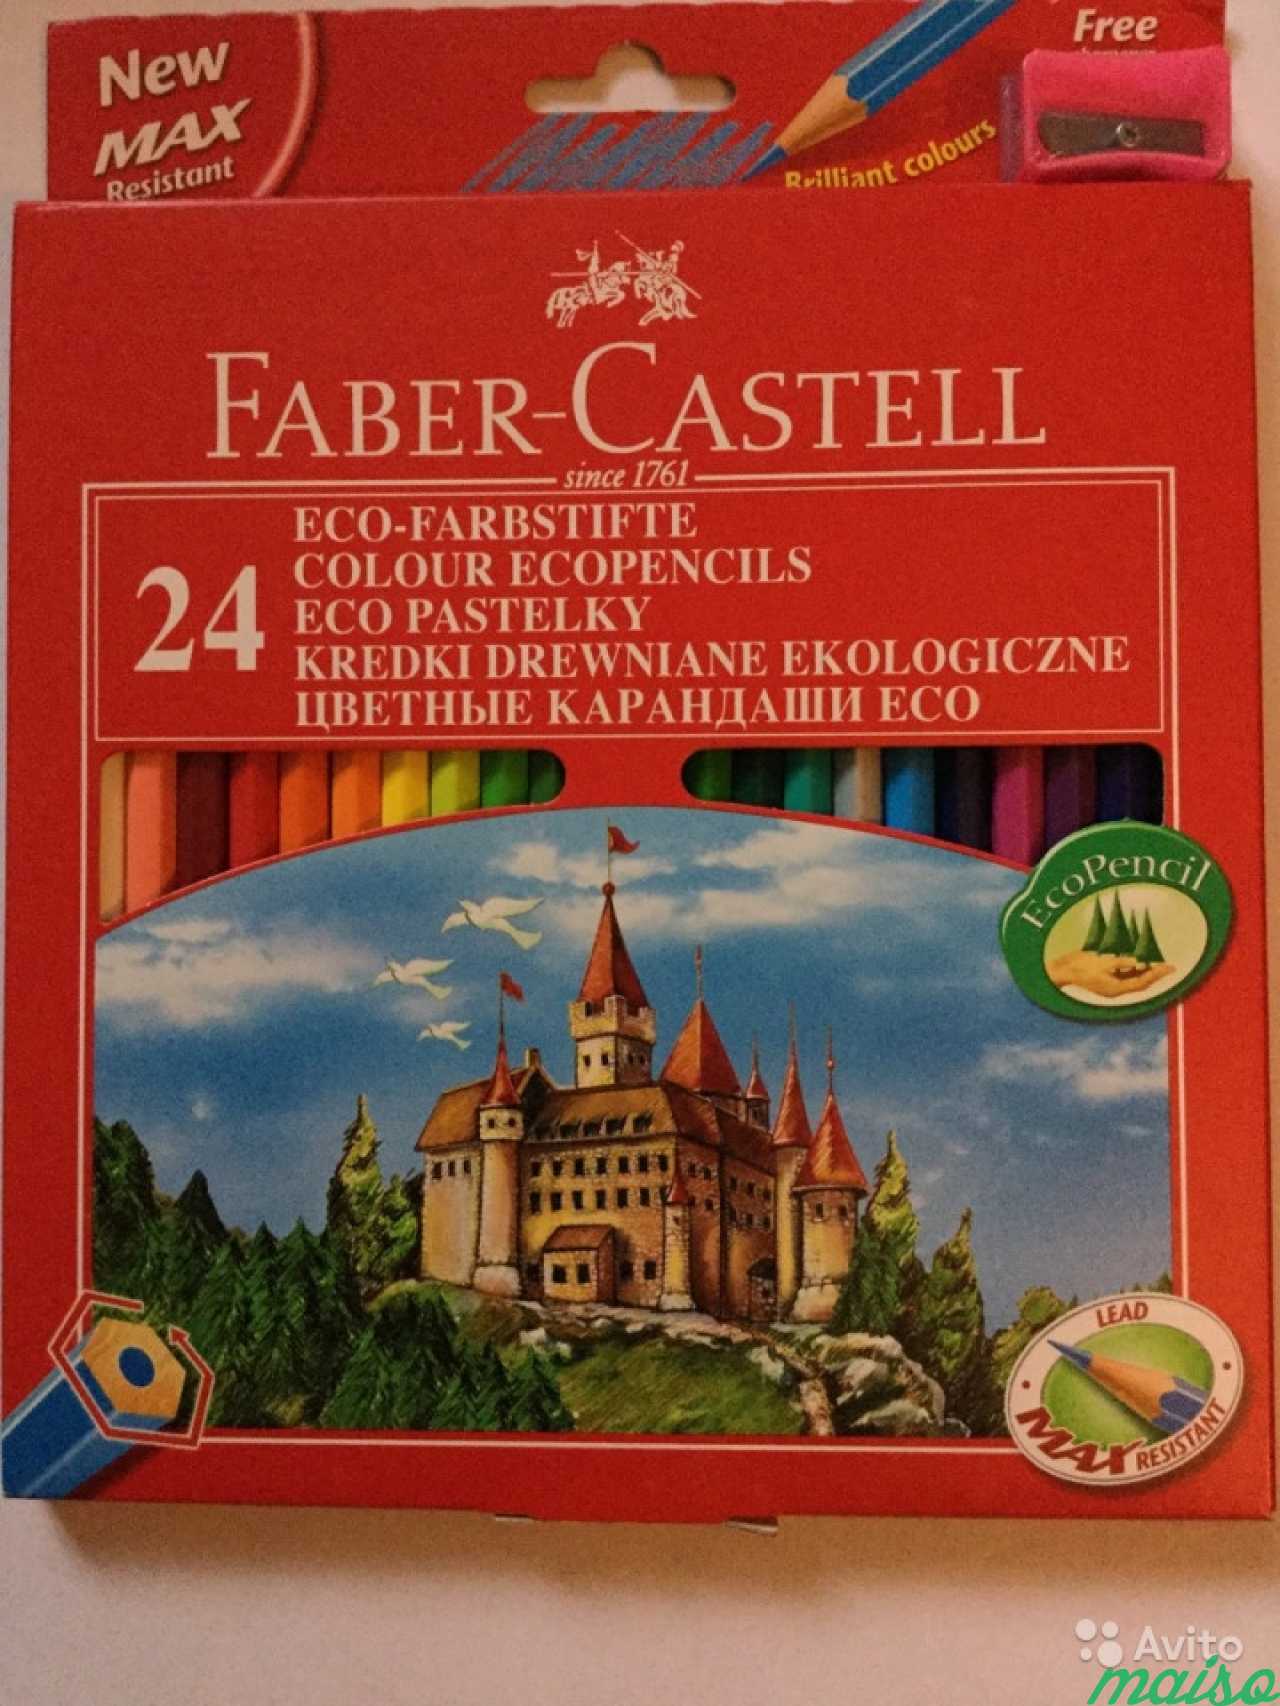 Цветные карандаши Faber-Castell 24 цвета в Санкт-Петербурге. Фото 1